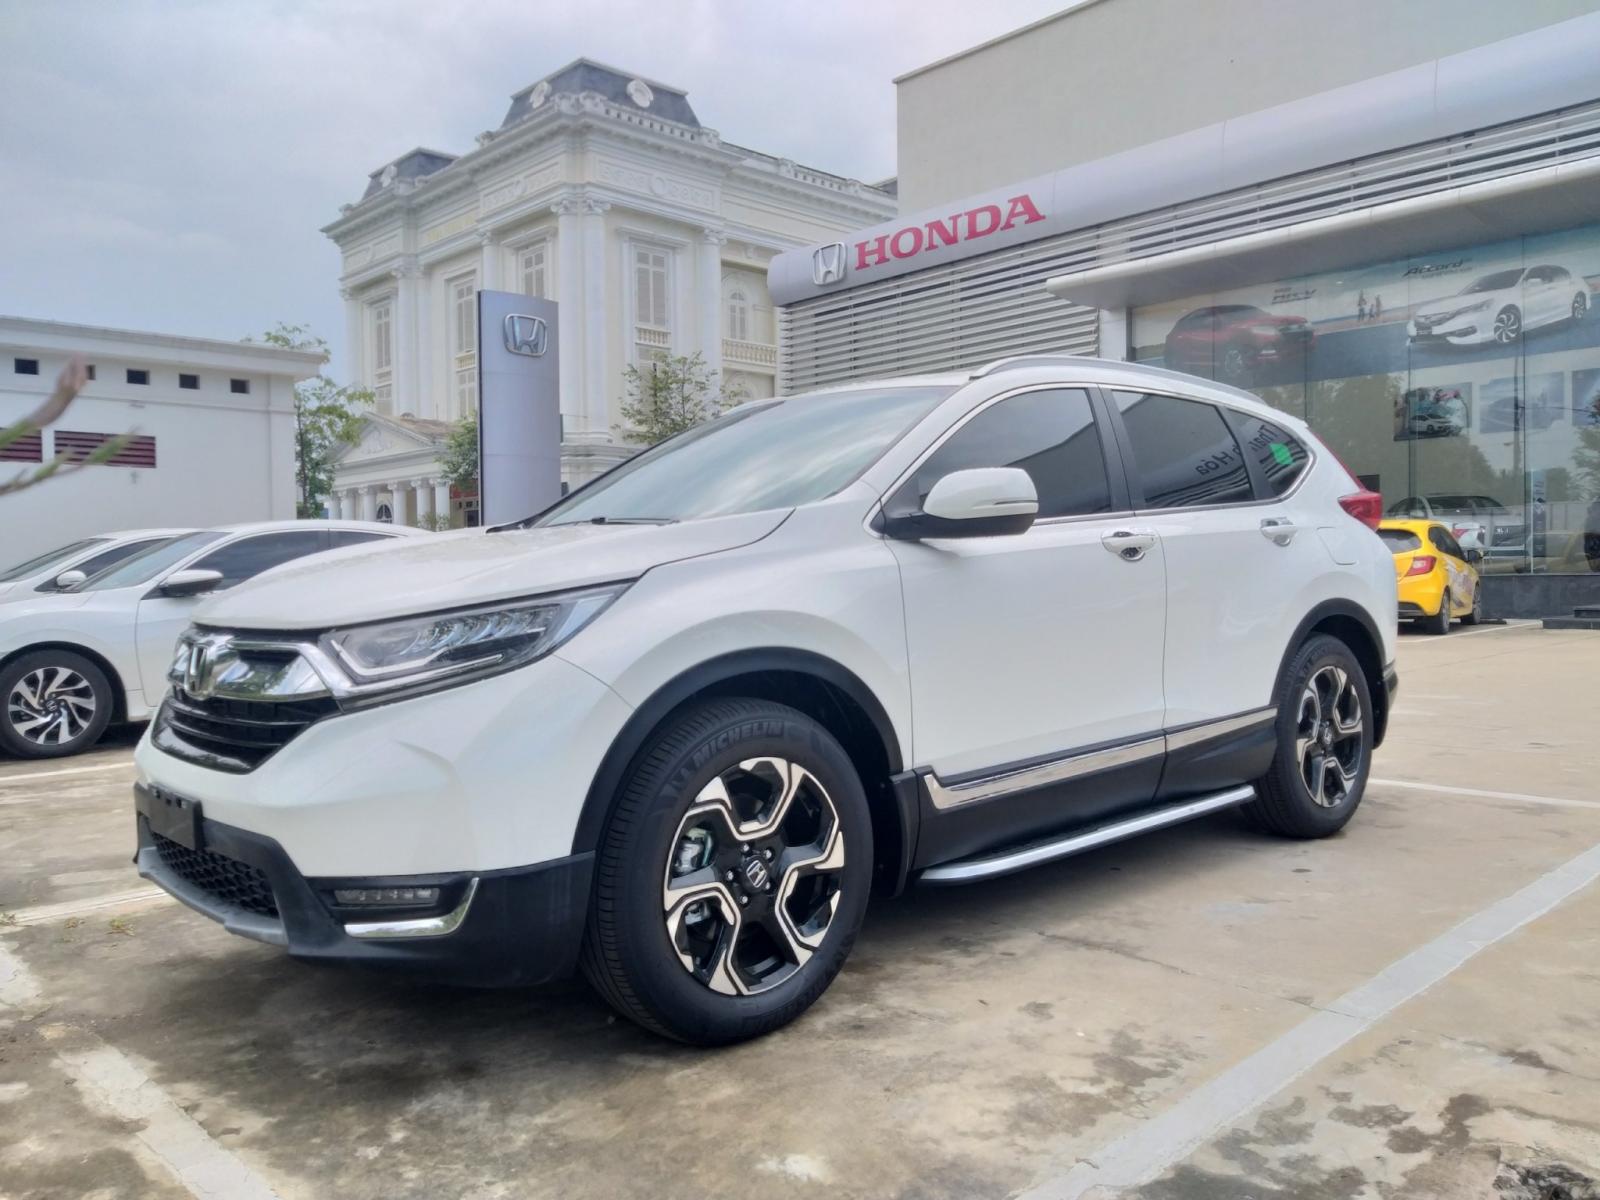 Giao ngay Honda CR-V 1.5 l, màu trắng, đời 2019, giảm giá sốc khi mua xe tại Honda Ôtô Thanh Hóa, LH: 0962028368.-0